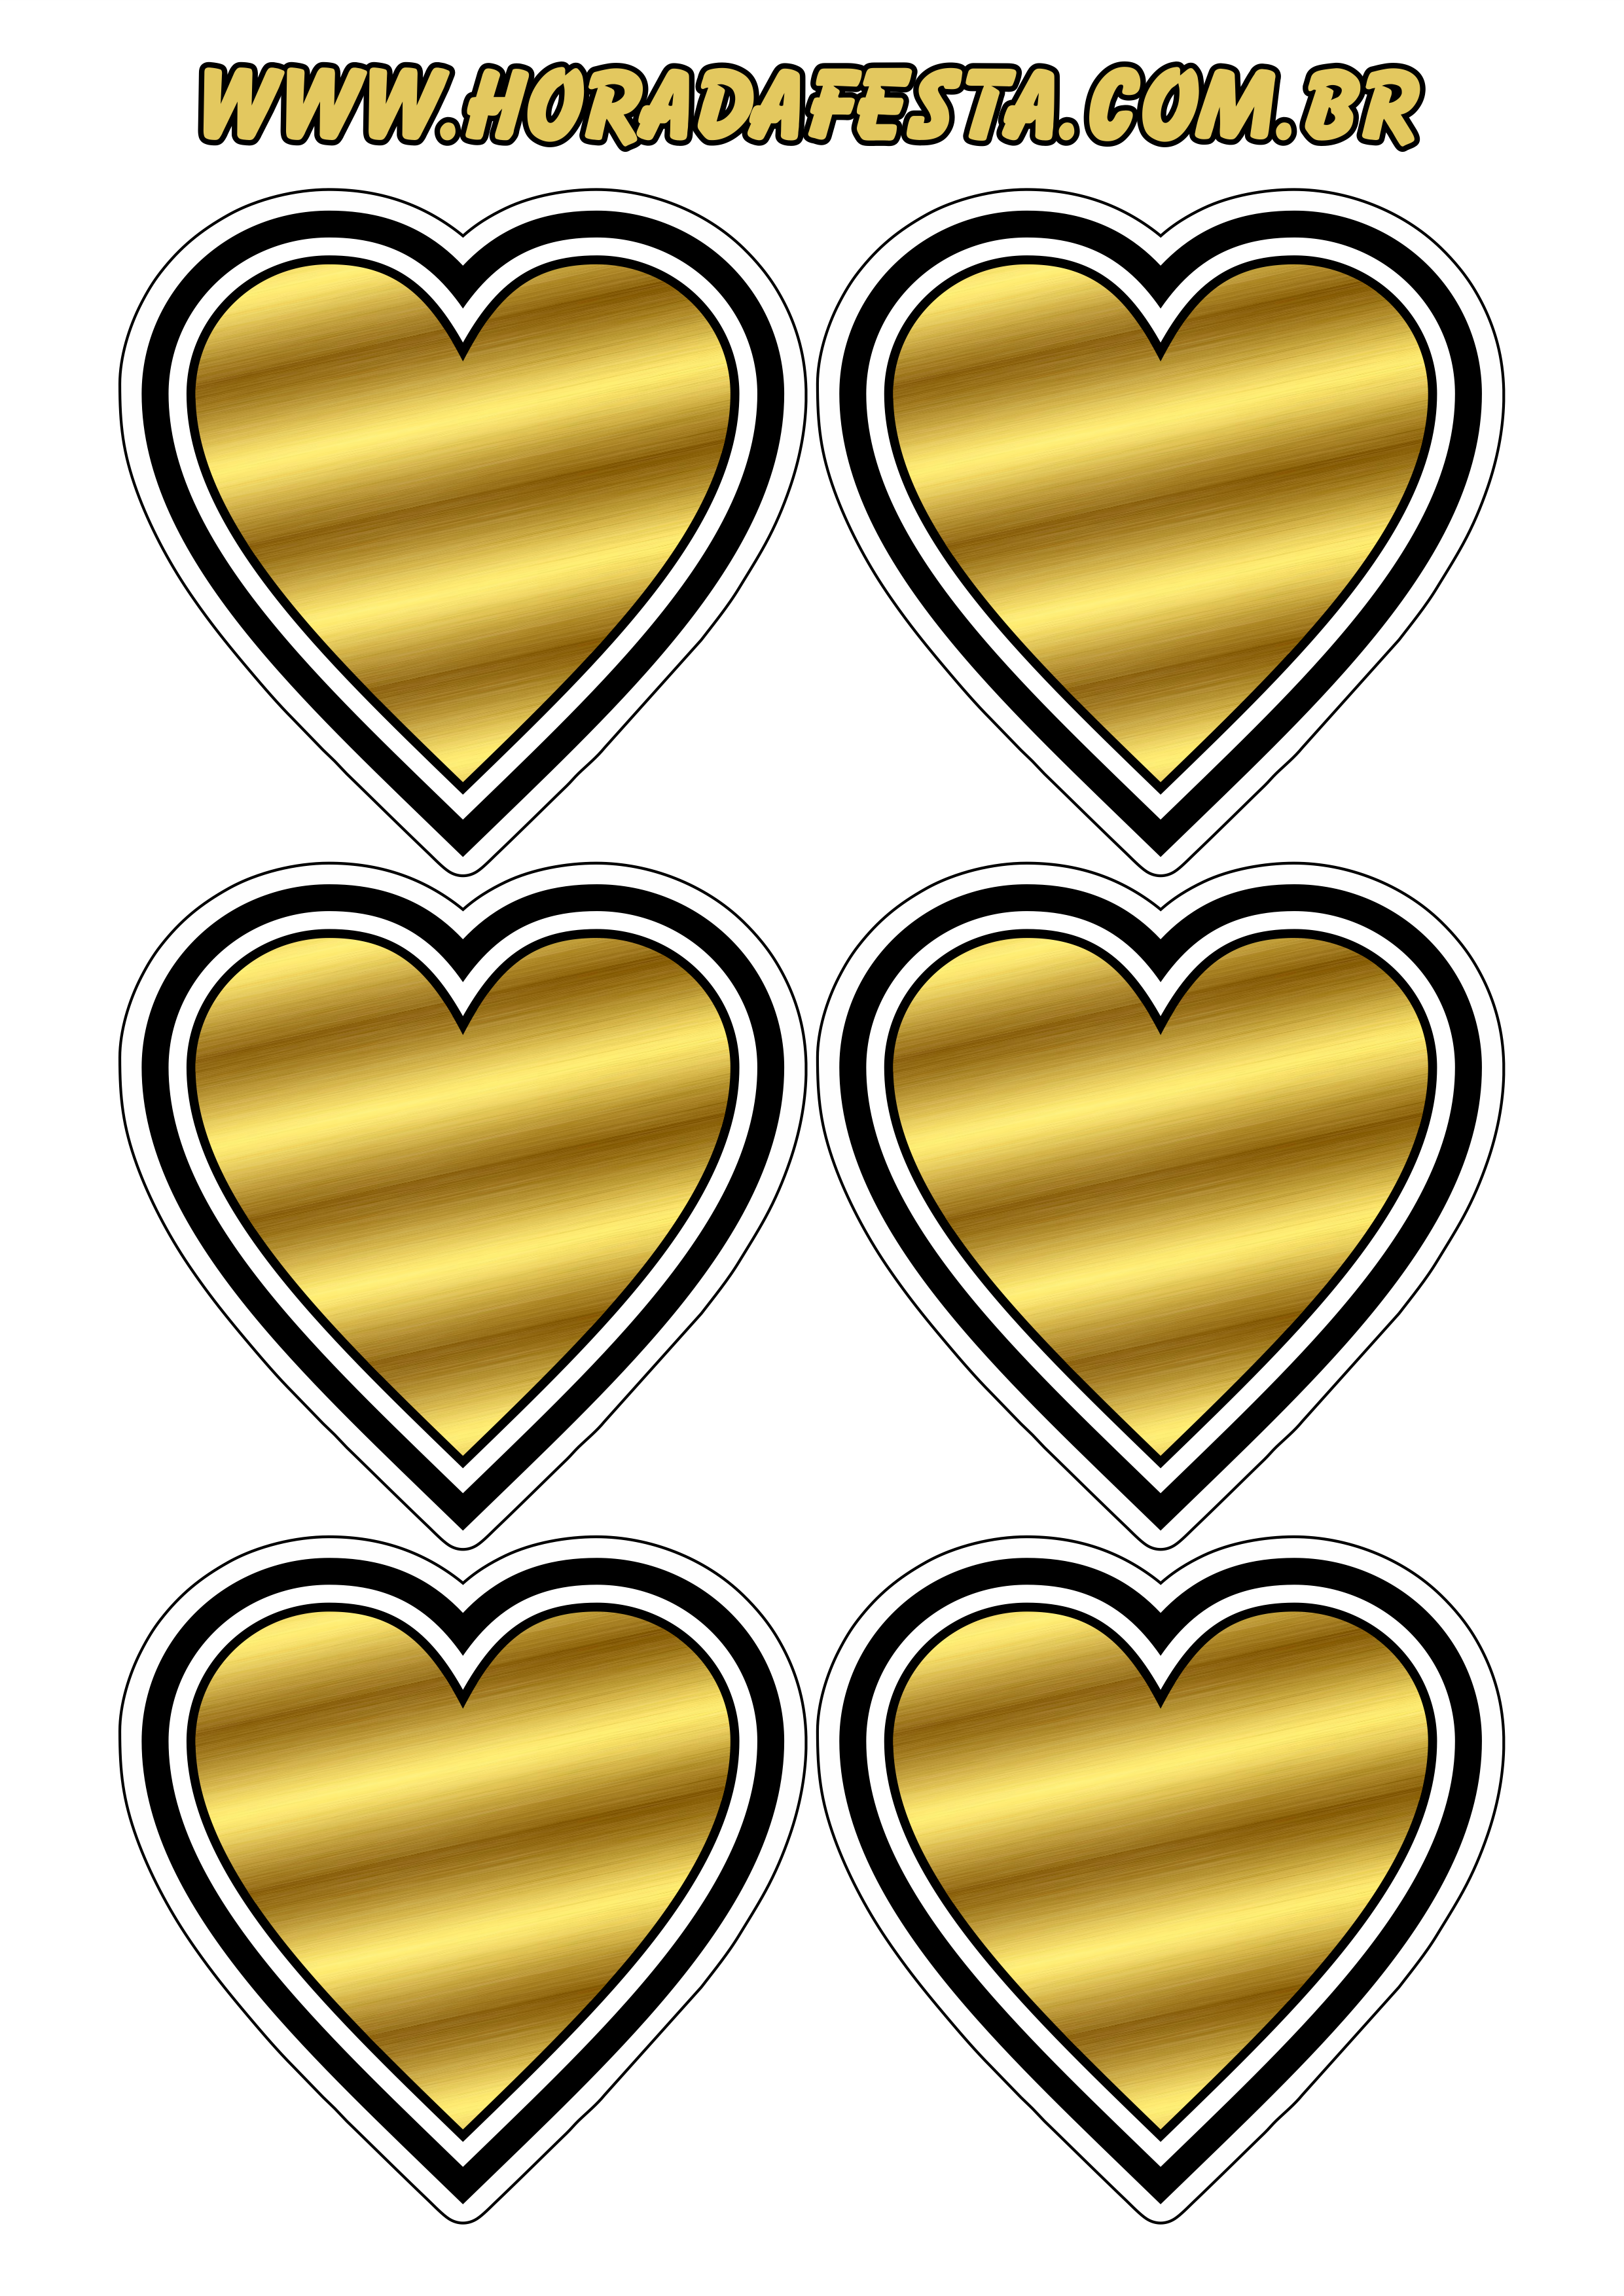 Coração dourado com contorno adesivo tag sticker decoração de festas temáticas 6 imagens png